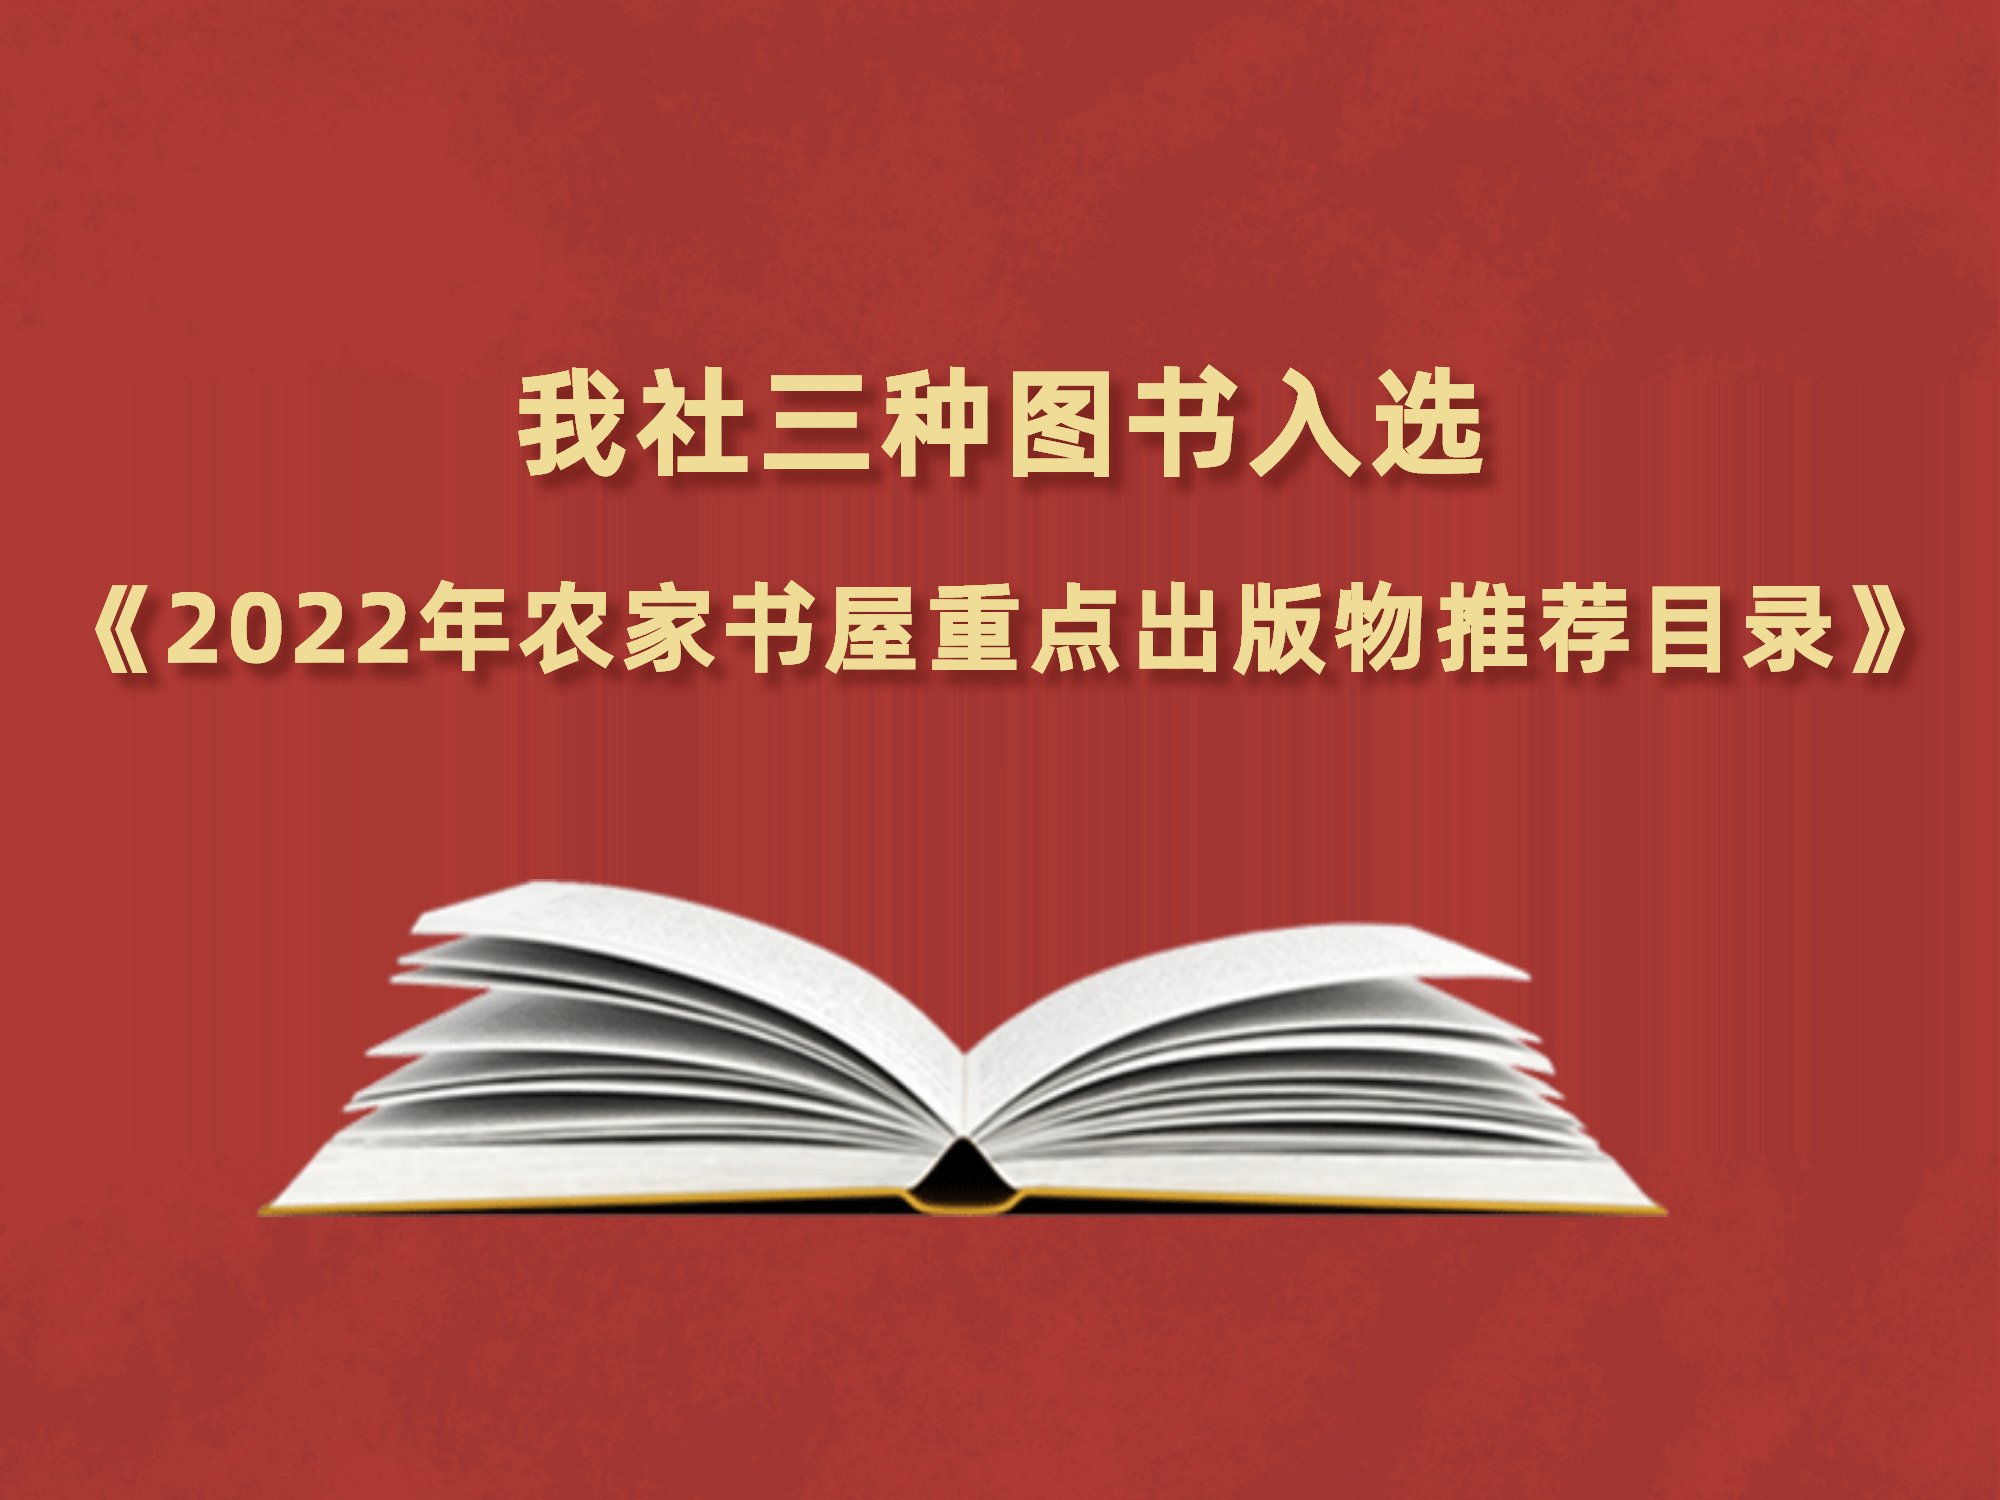 广州出版社三种图书入选《2022年农家书屋重点出版物推荐目录》